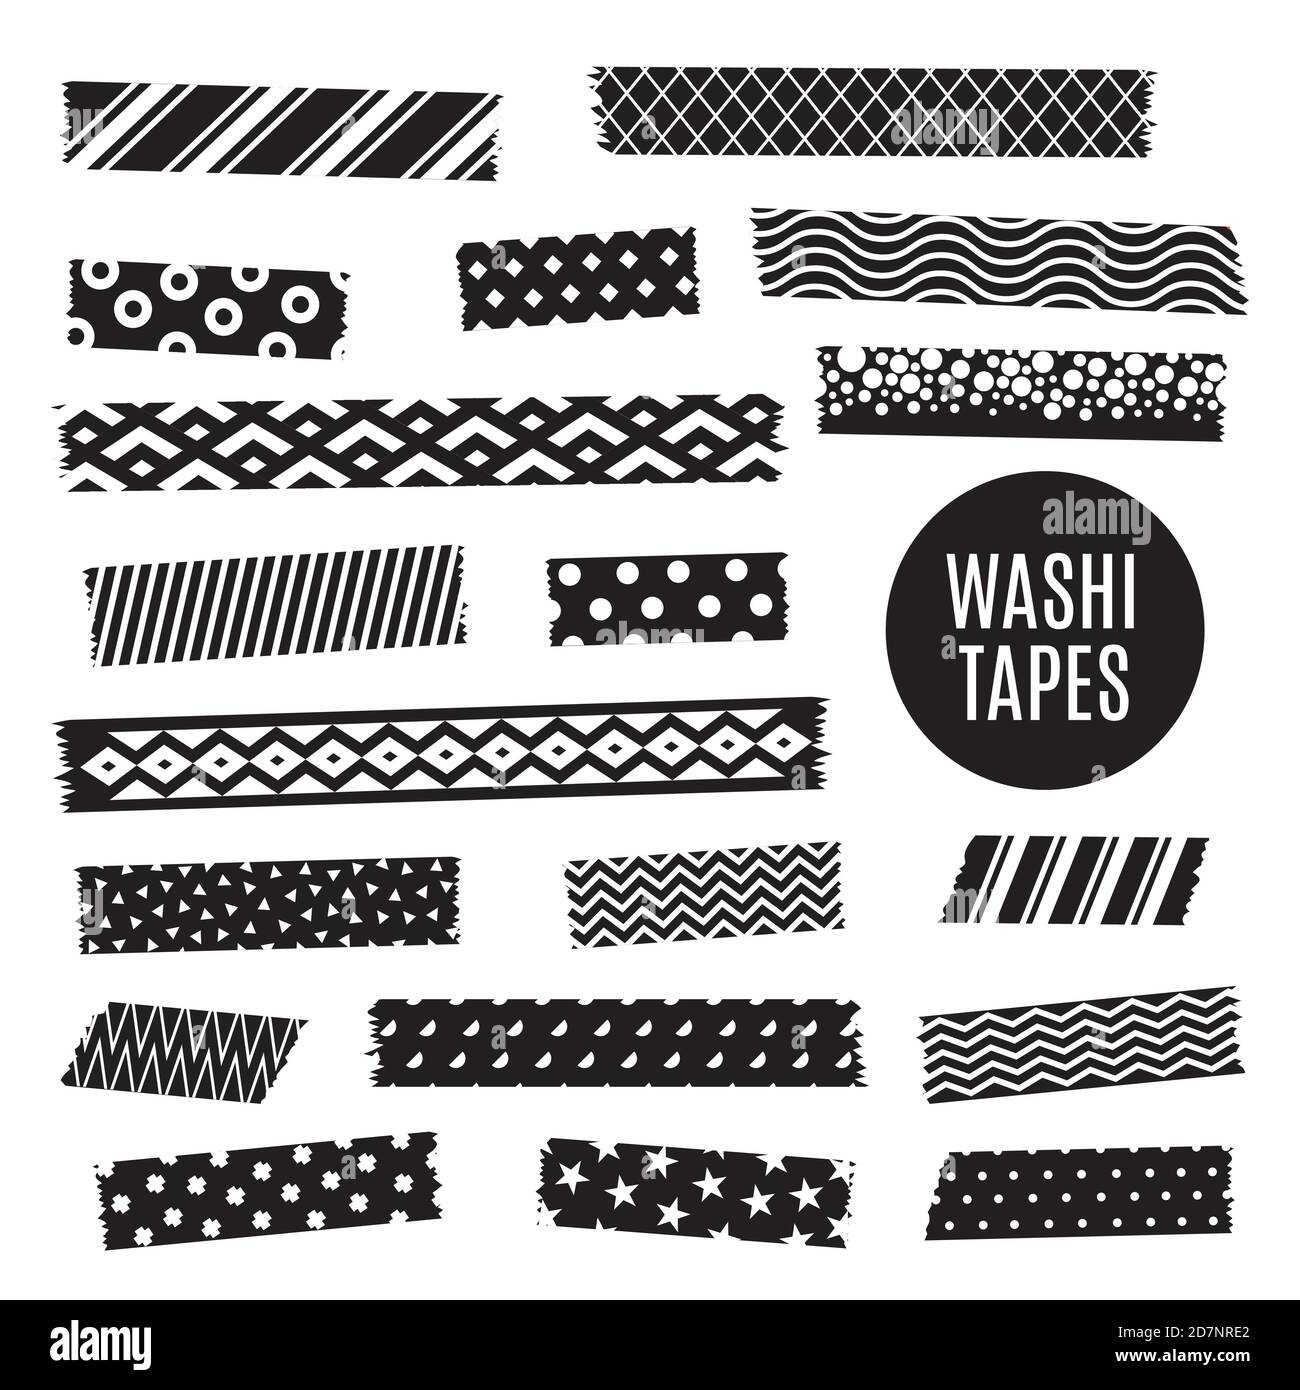 Schwarz und weiß washi Tape Strips, Vektor-Scrapbook-Elemente. Abbildung  von washi Band monochrome Scrapbooking, gemusterte Aufkleber  Stock-Vektorgrafik - Alamy